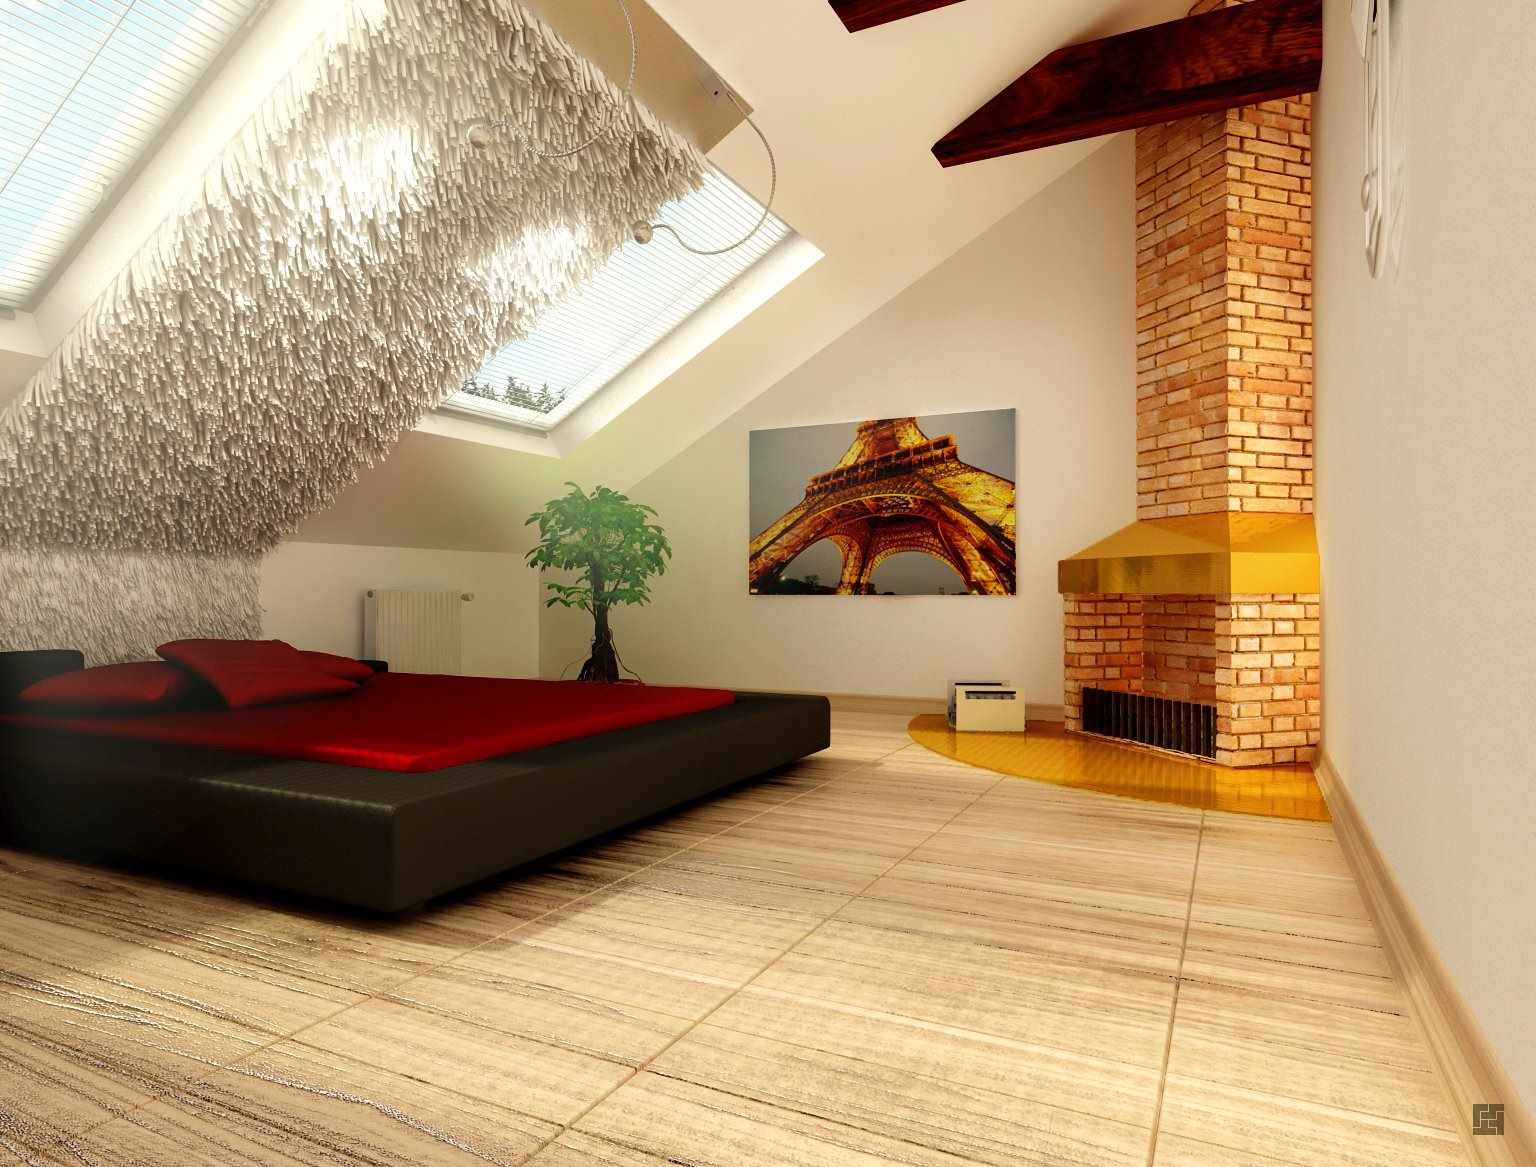 variant af et smukt design af et soveværelse på loftet